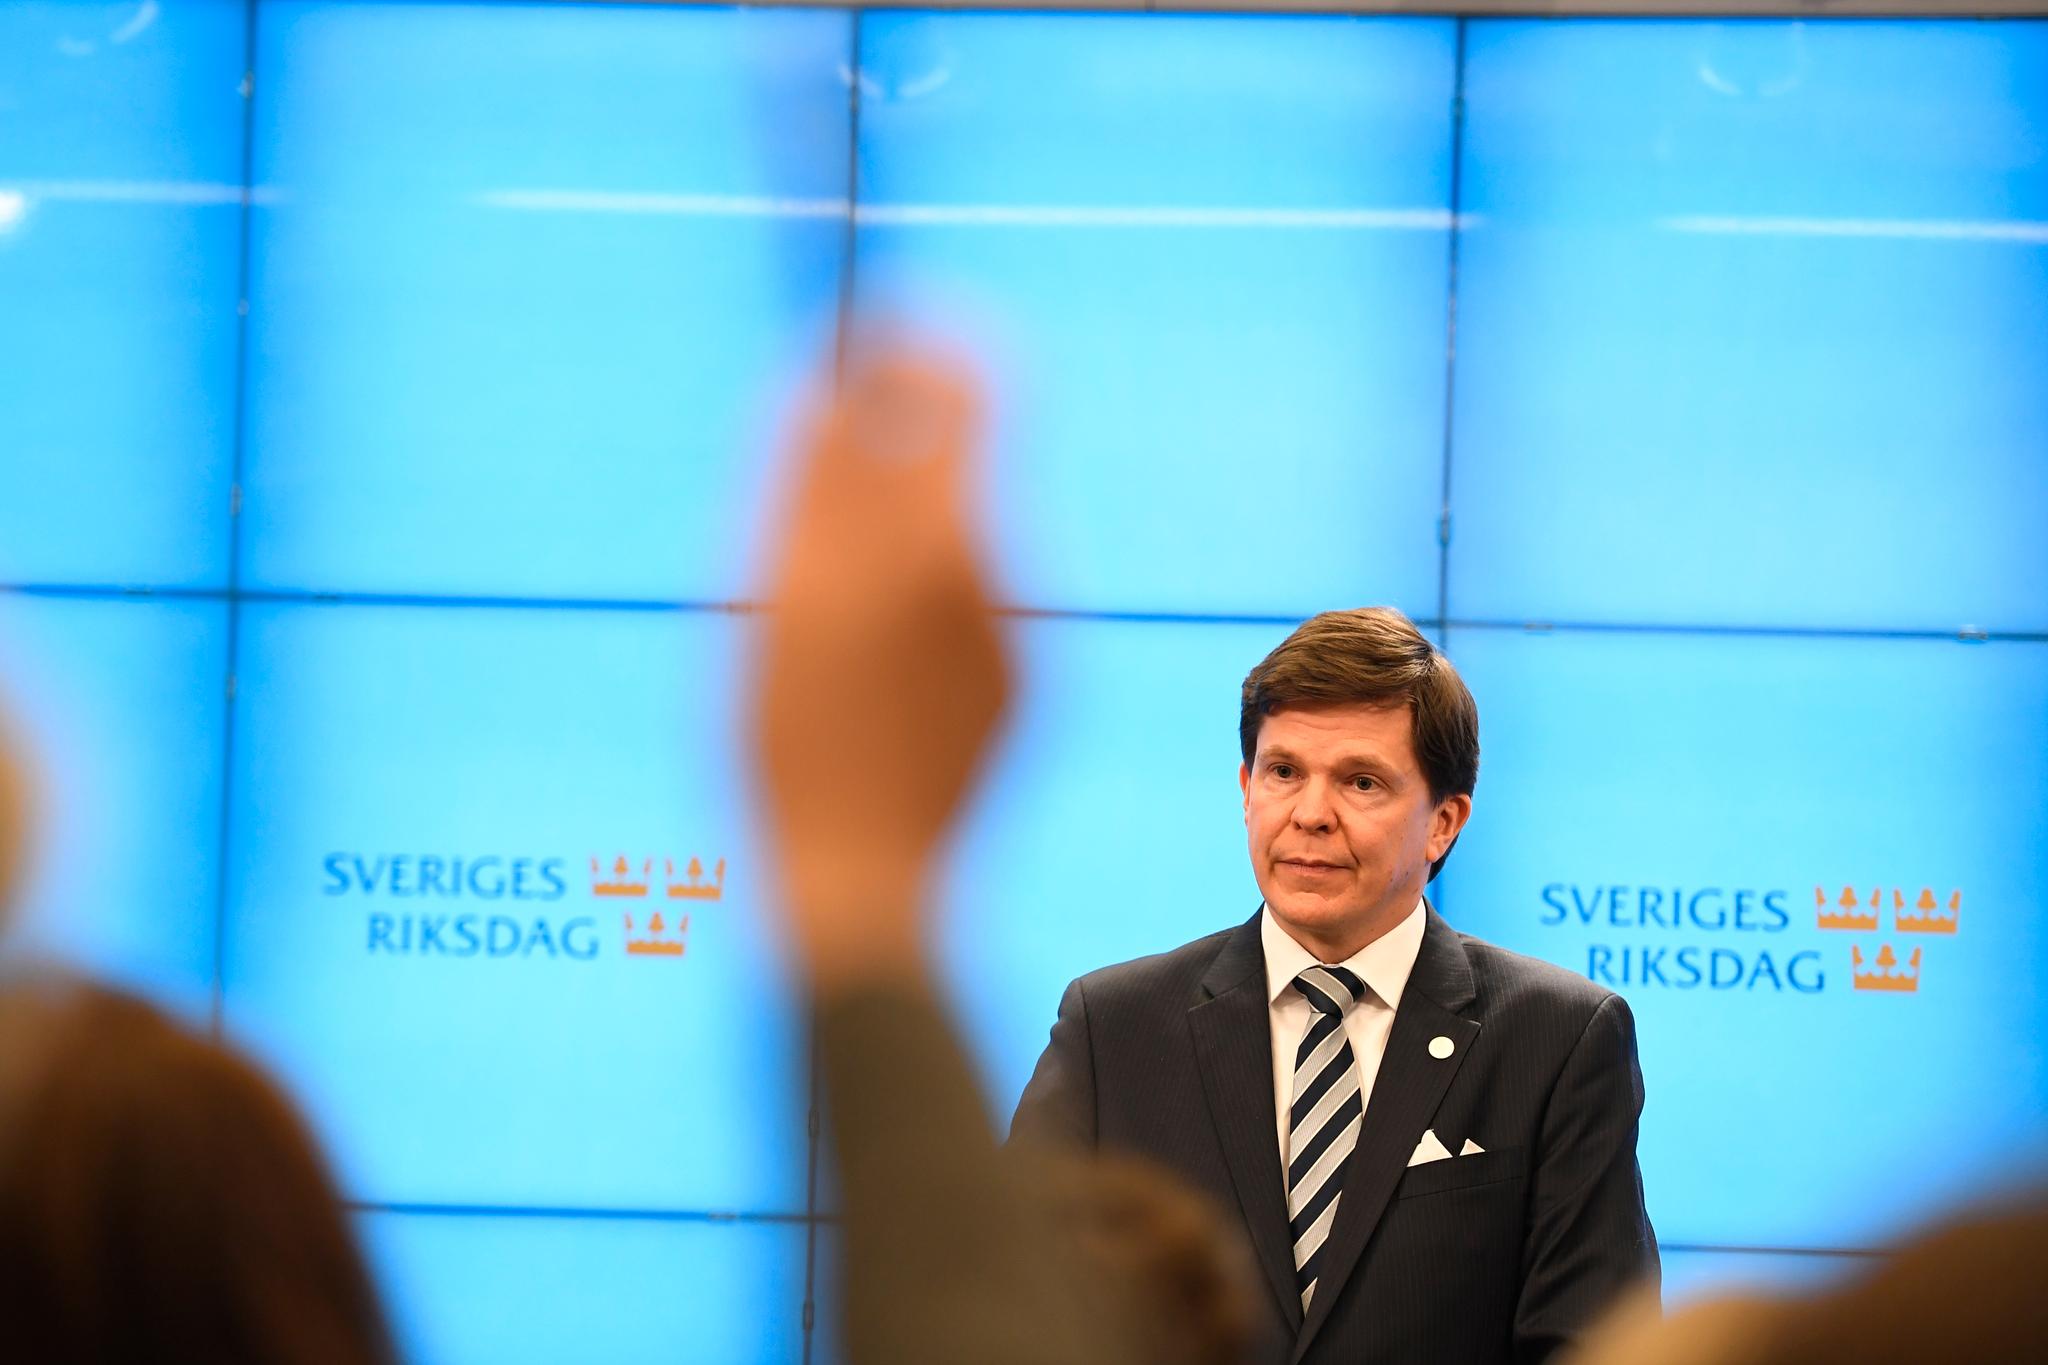  Moderaterna-politiker Andreas Norén er talmann i Riksdagen, som tilsvarer den norske stortingspresidenten. Nå peker han på partifelle Ulf Kristersson som mulig statsminister.  